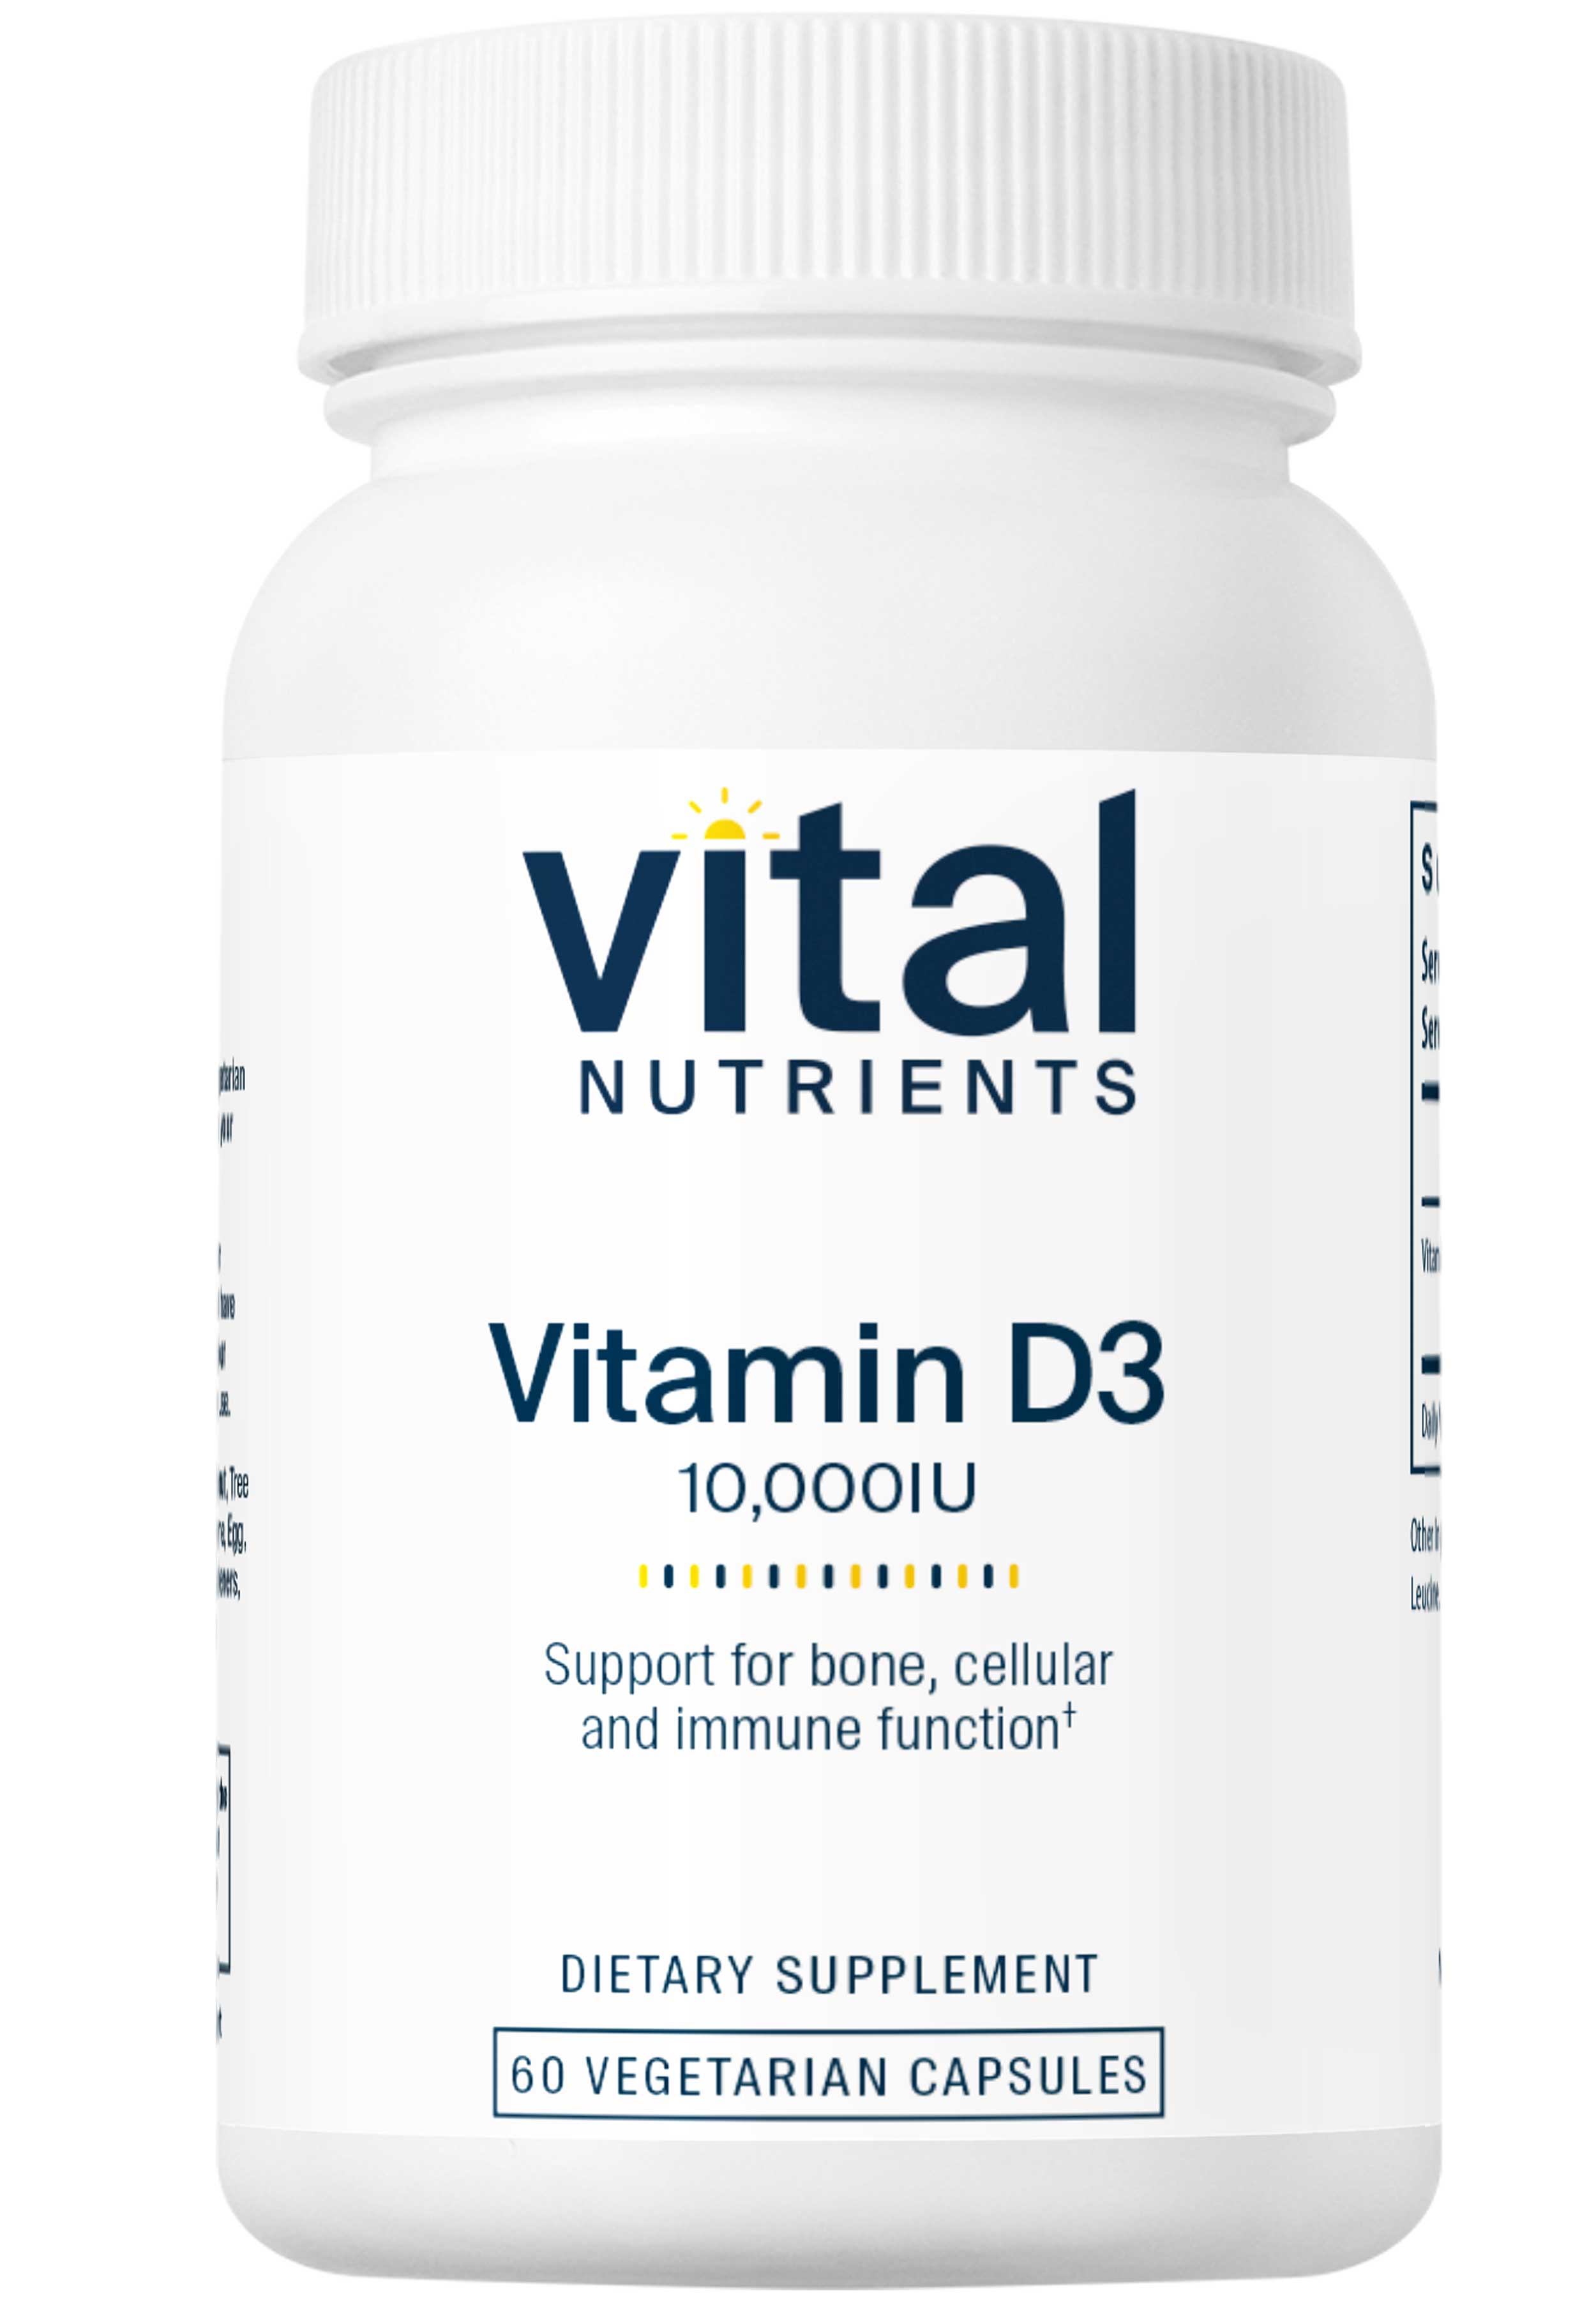 Vital Nutrients Vitamin D3 10,000IU